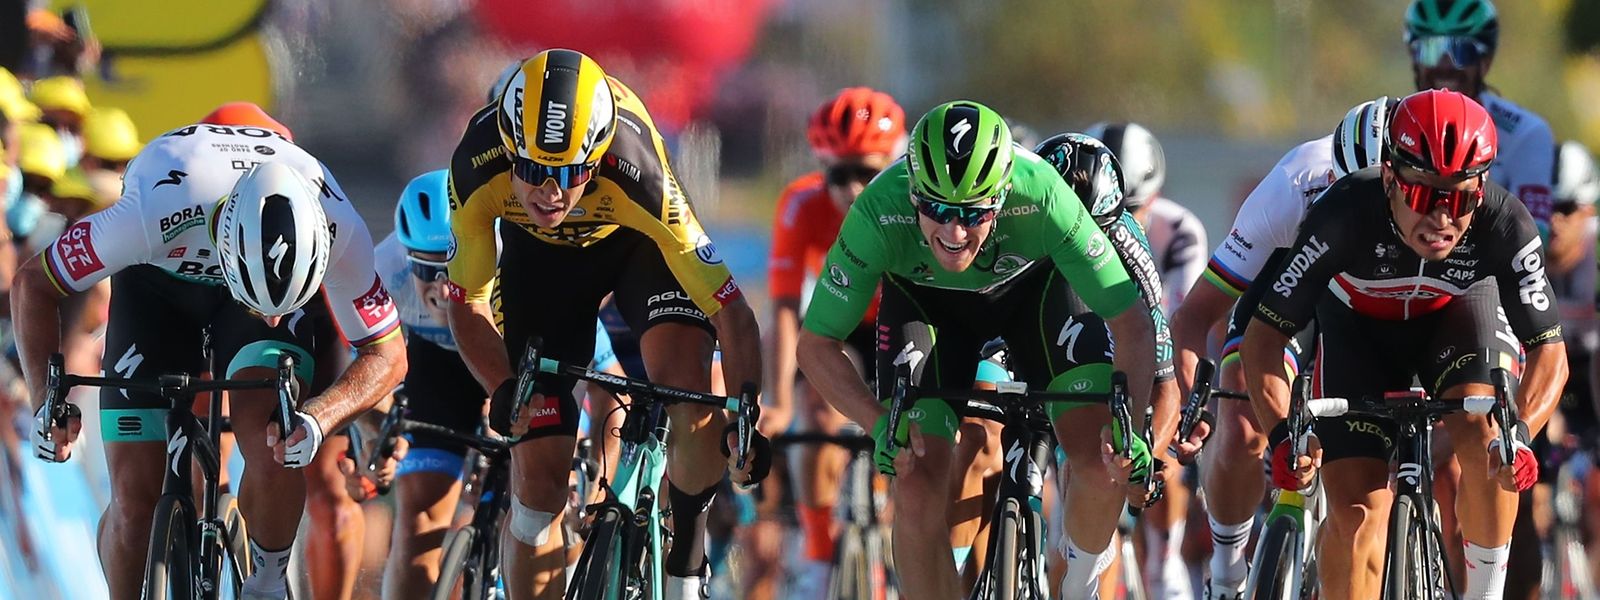 Le Tour de France déboule ce jeudi en Lorraine, avec l'arrivée de la sixième étape à Longwy.